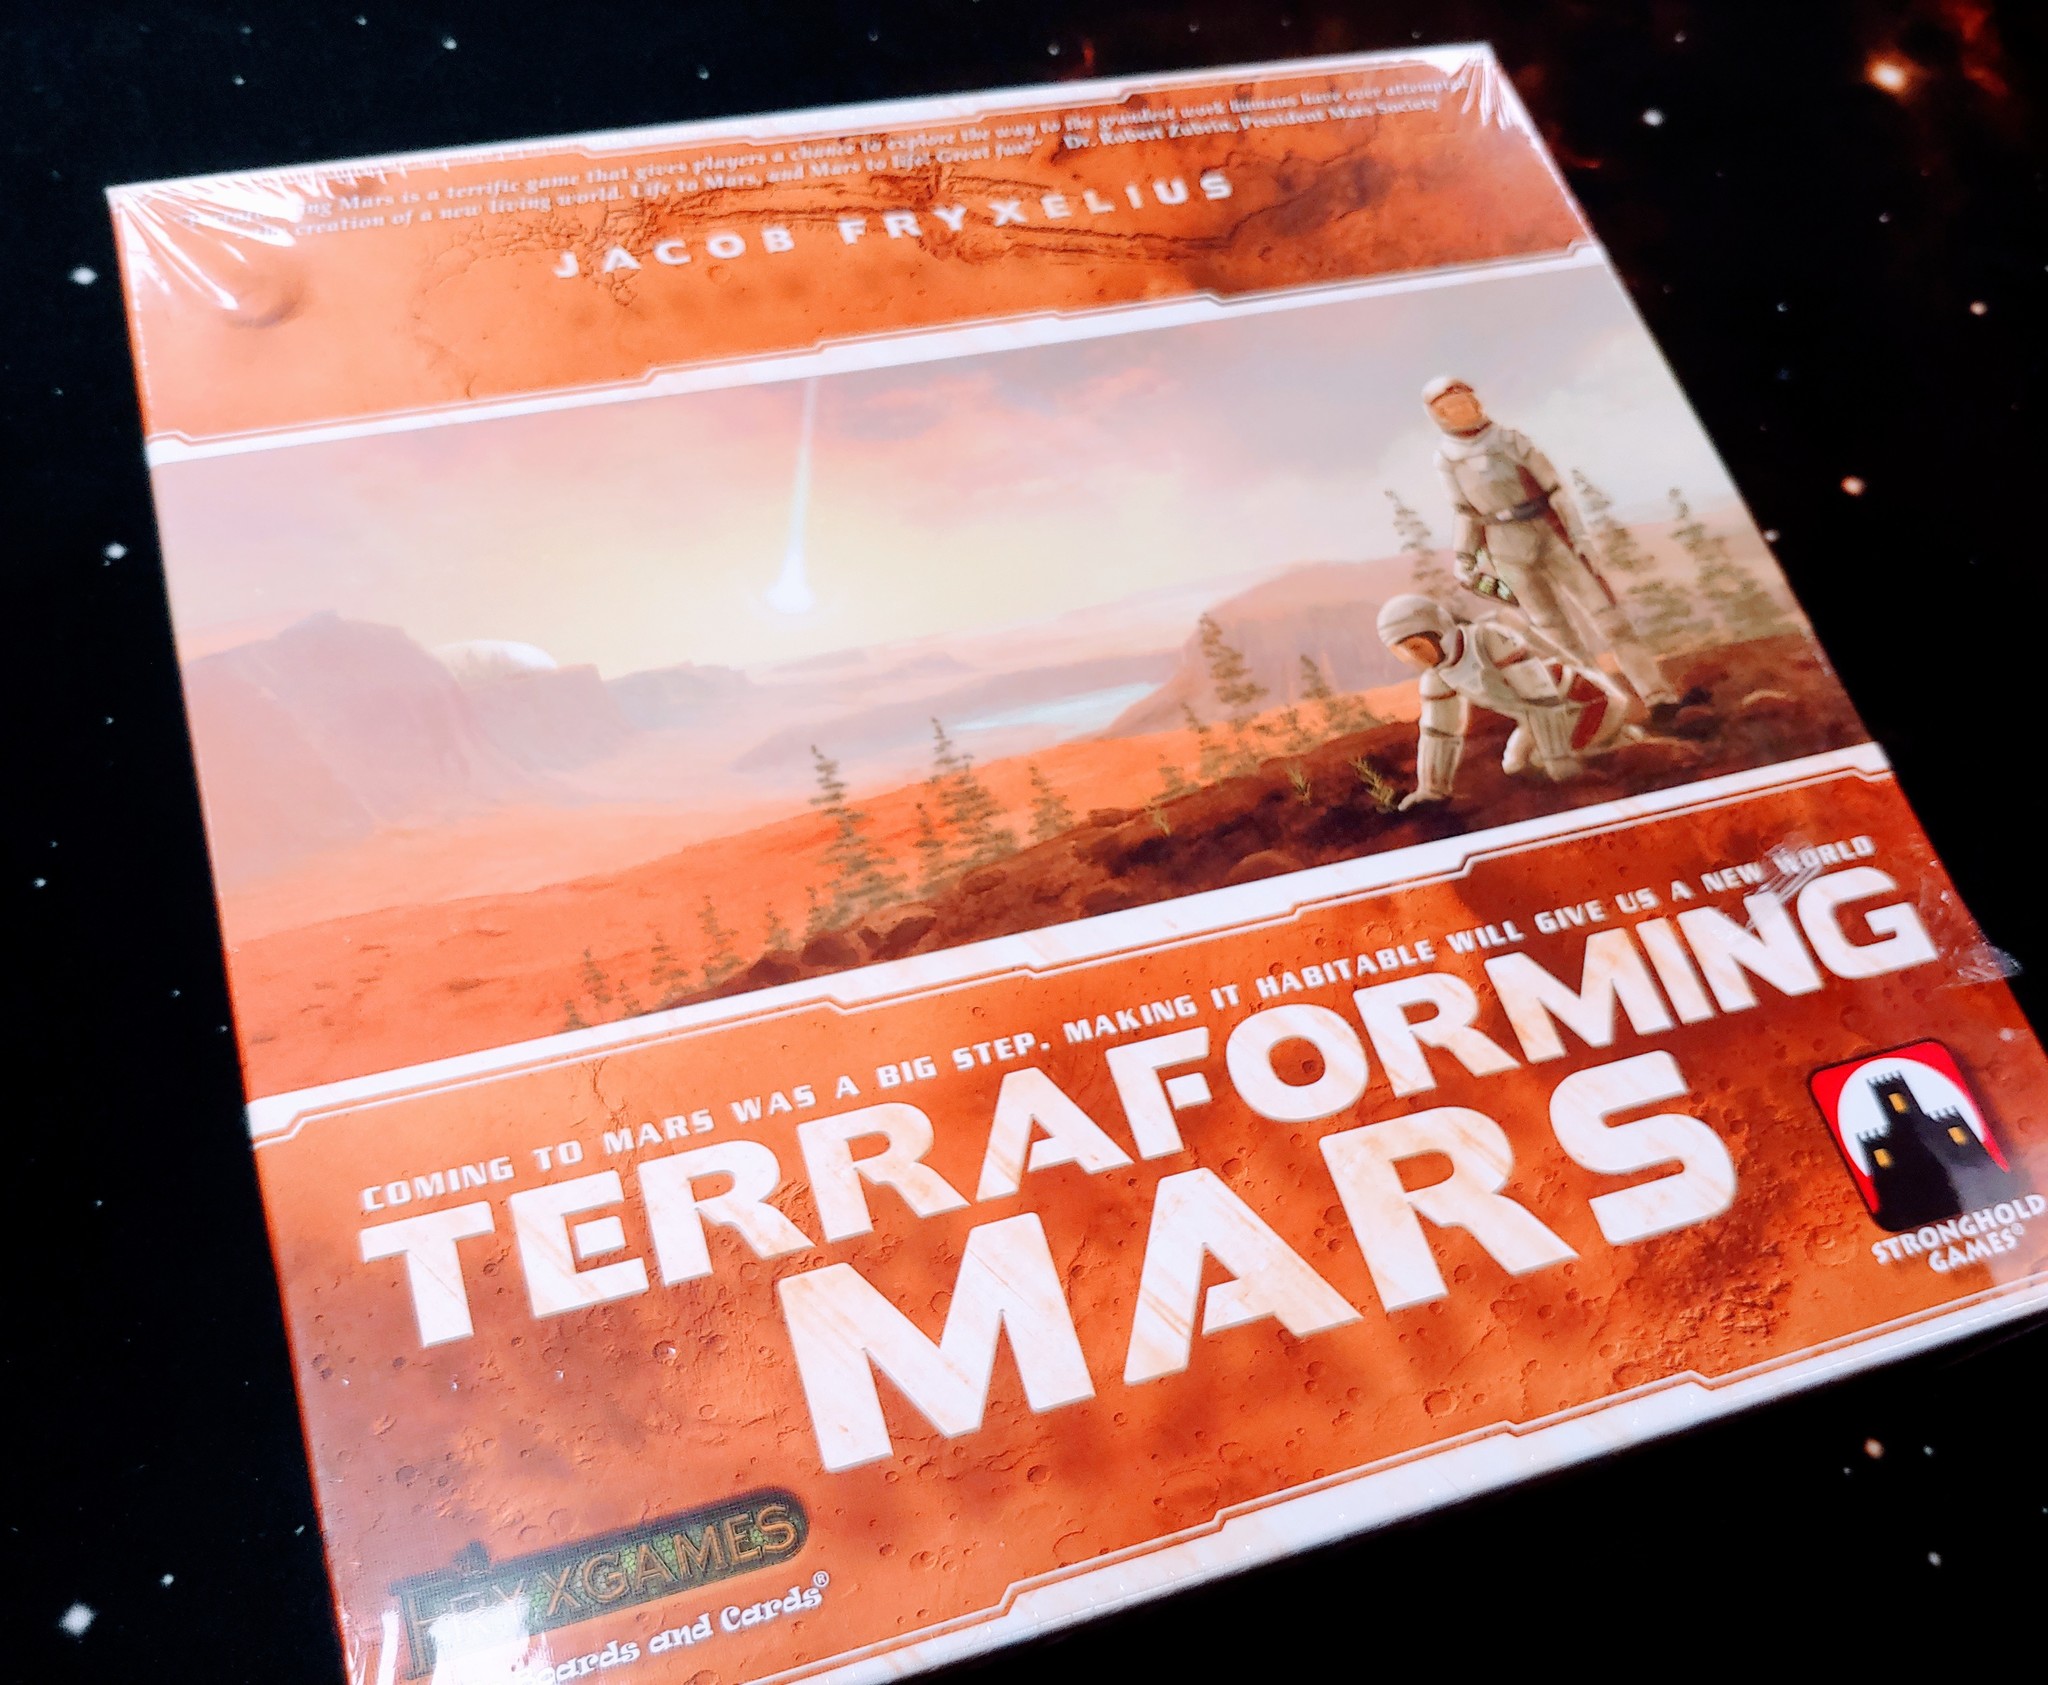 Terraforming Mars (2016) - Meeple Like Us